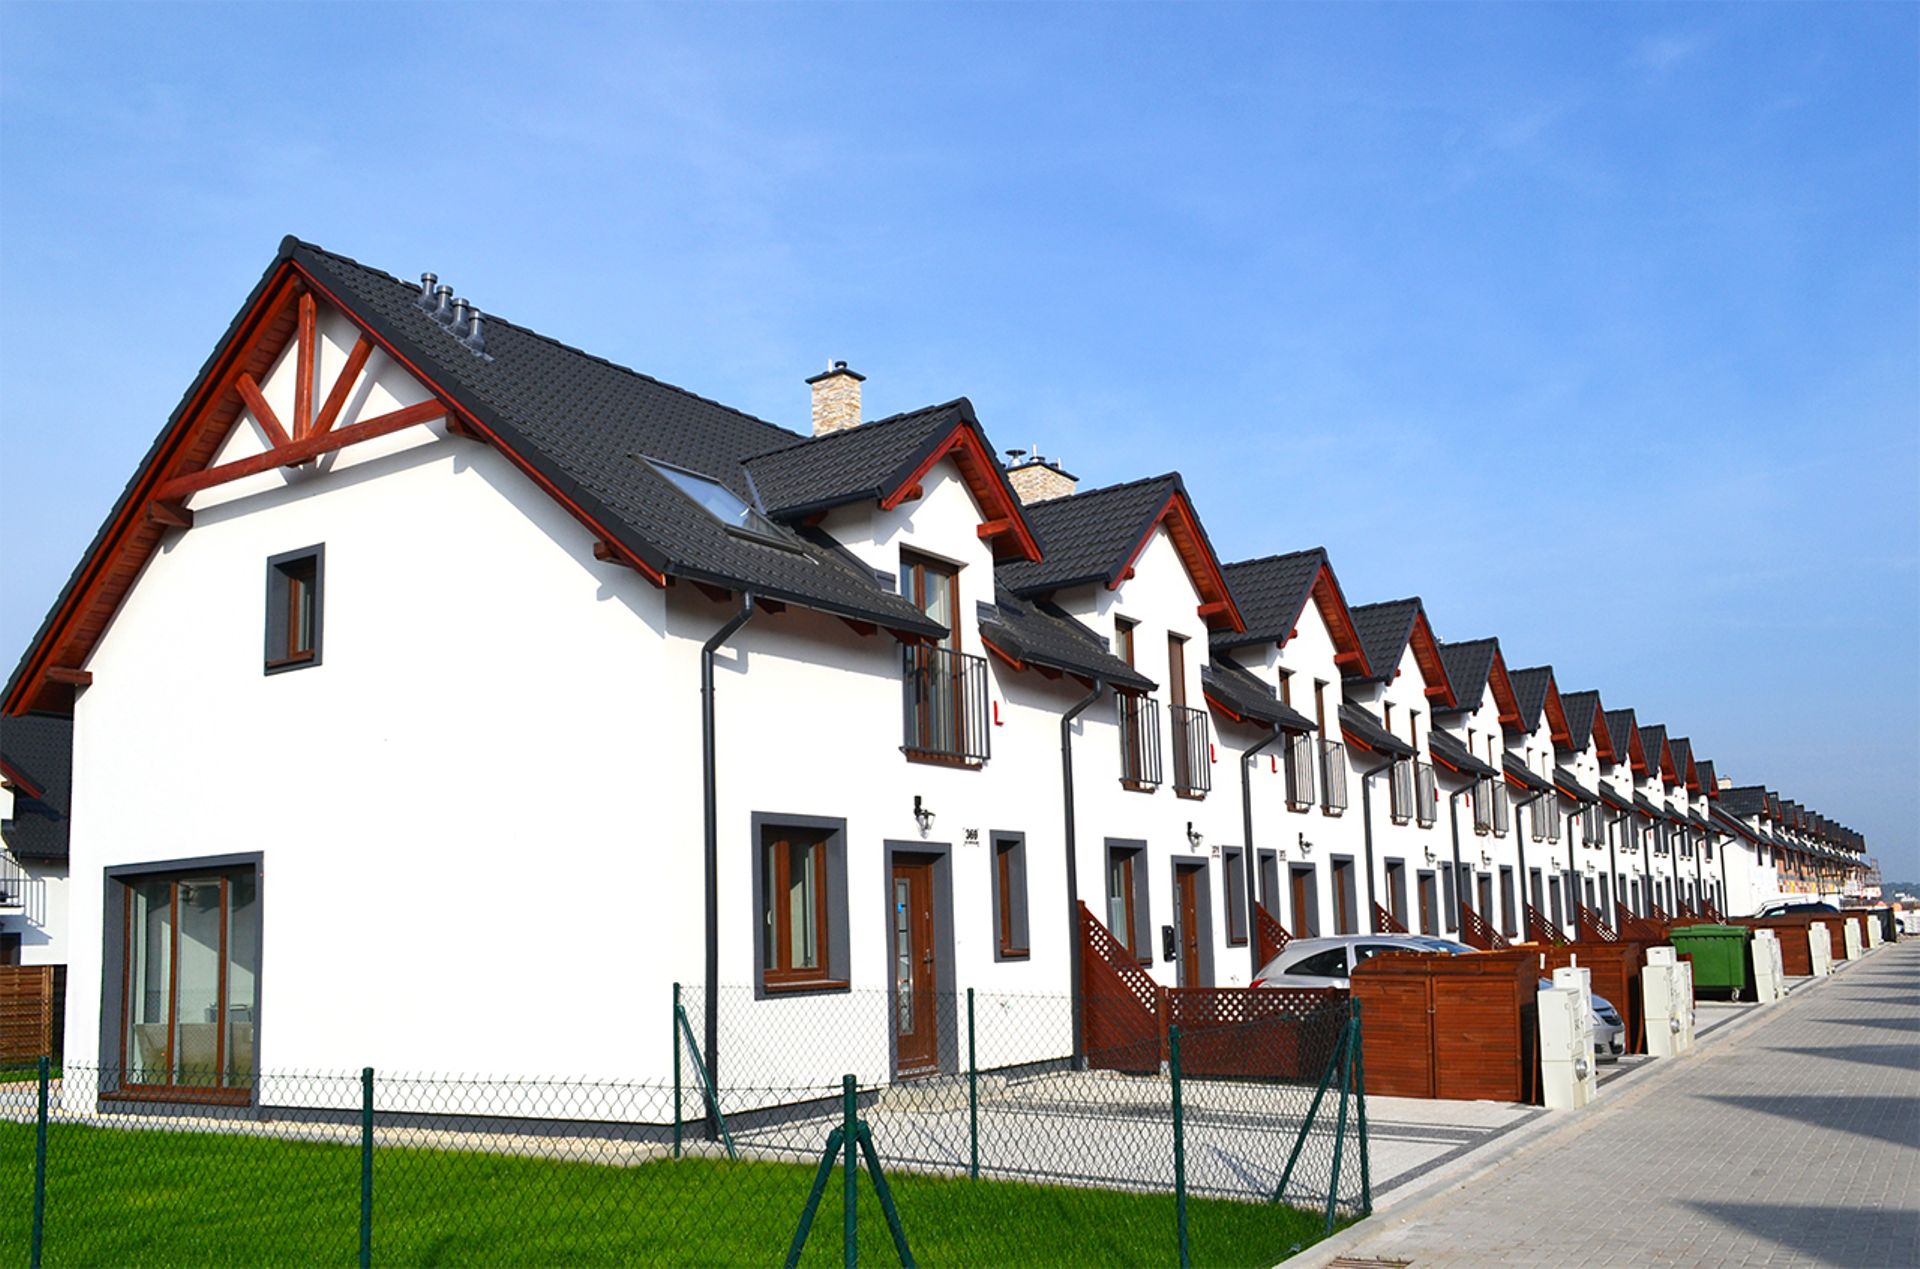  Budowa domów na Rodzinnym Zakątku koło Poznania przebiega zgodnie z planem